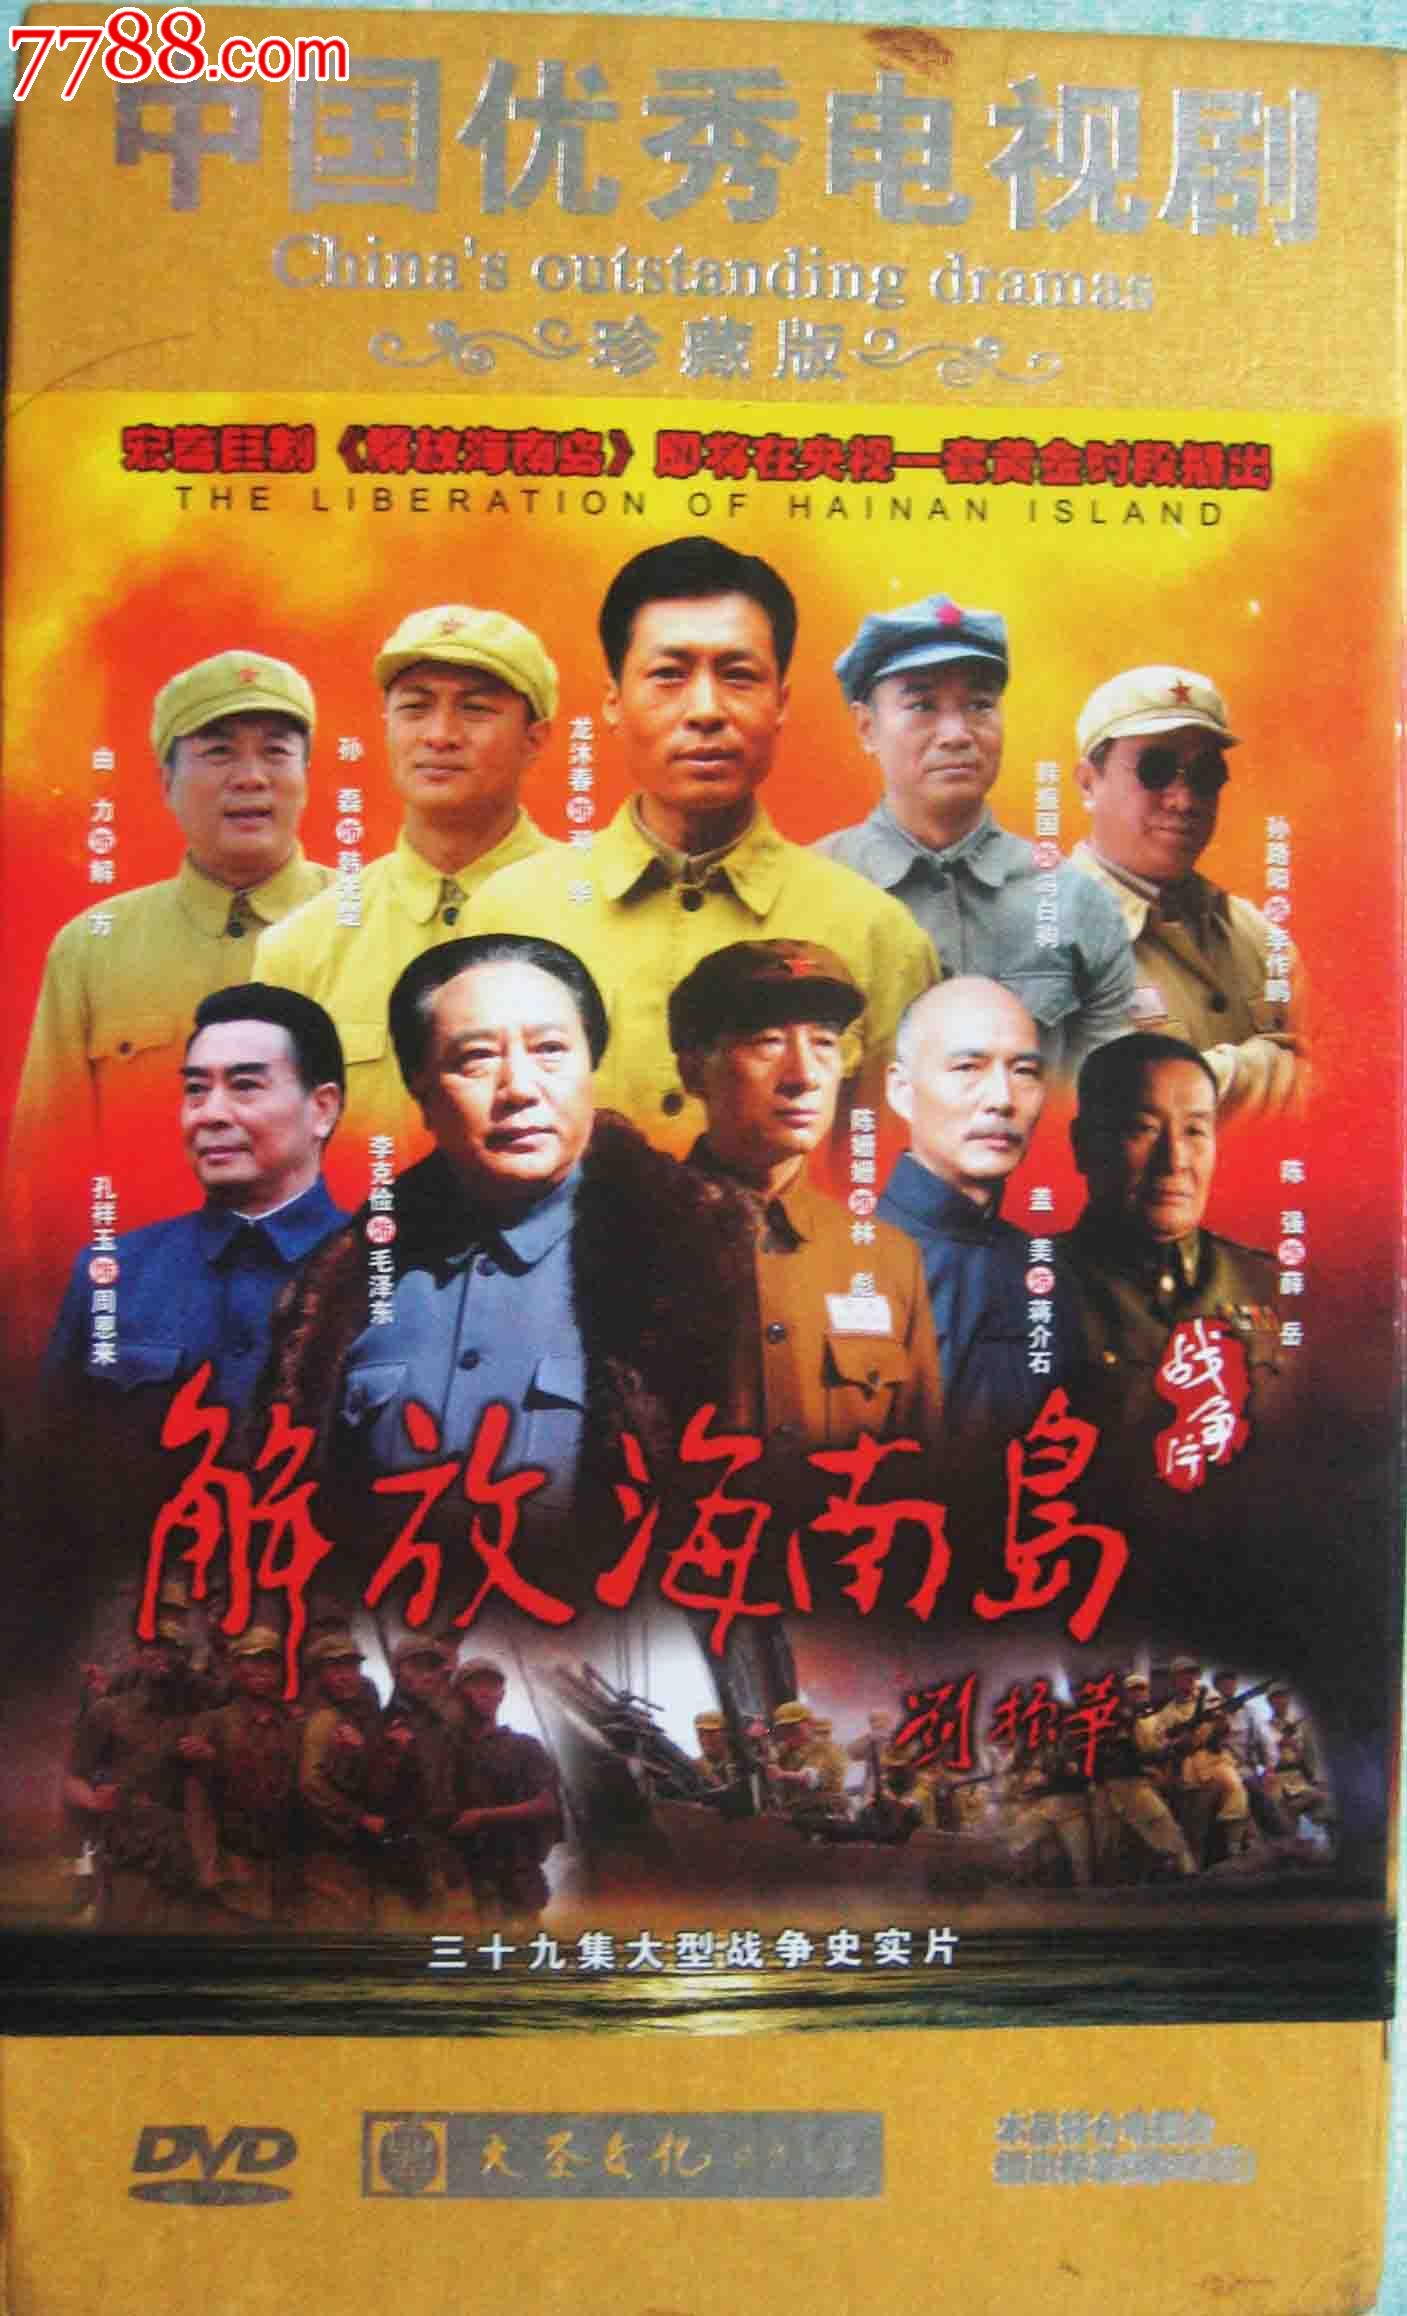 原装正版13碟dvd电视连续剧:《解放海南岛》